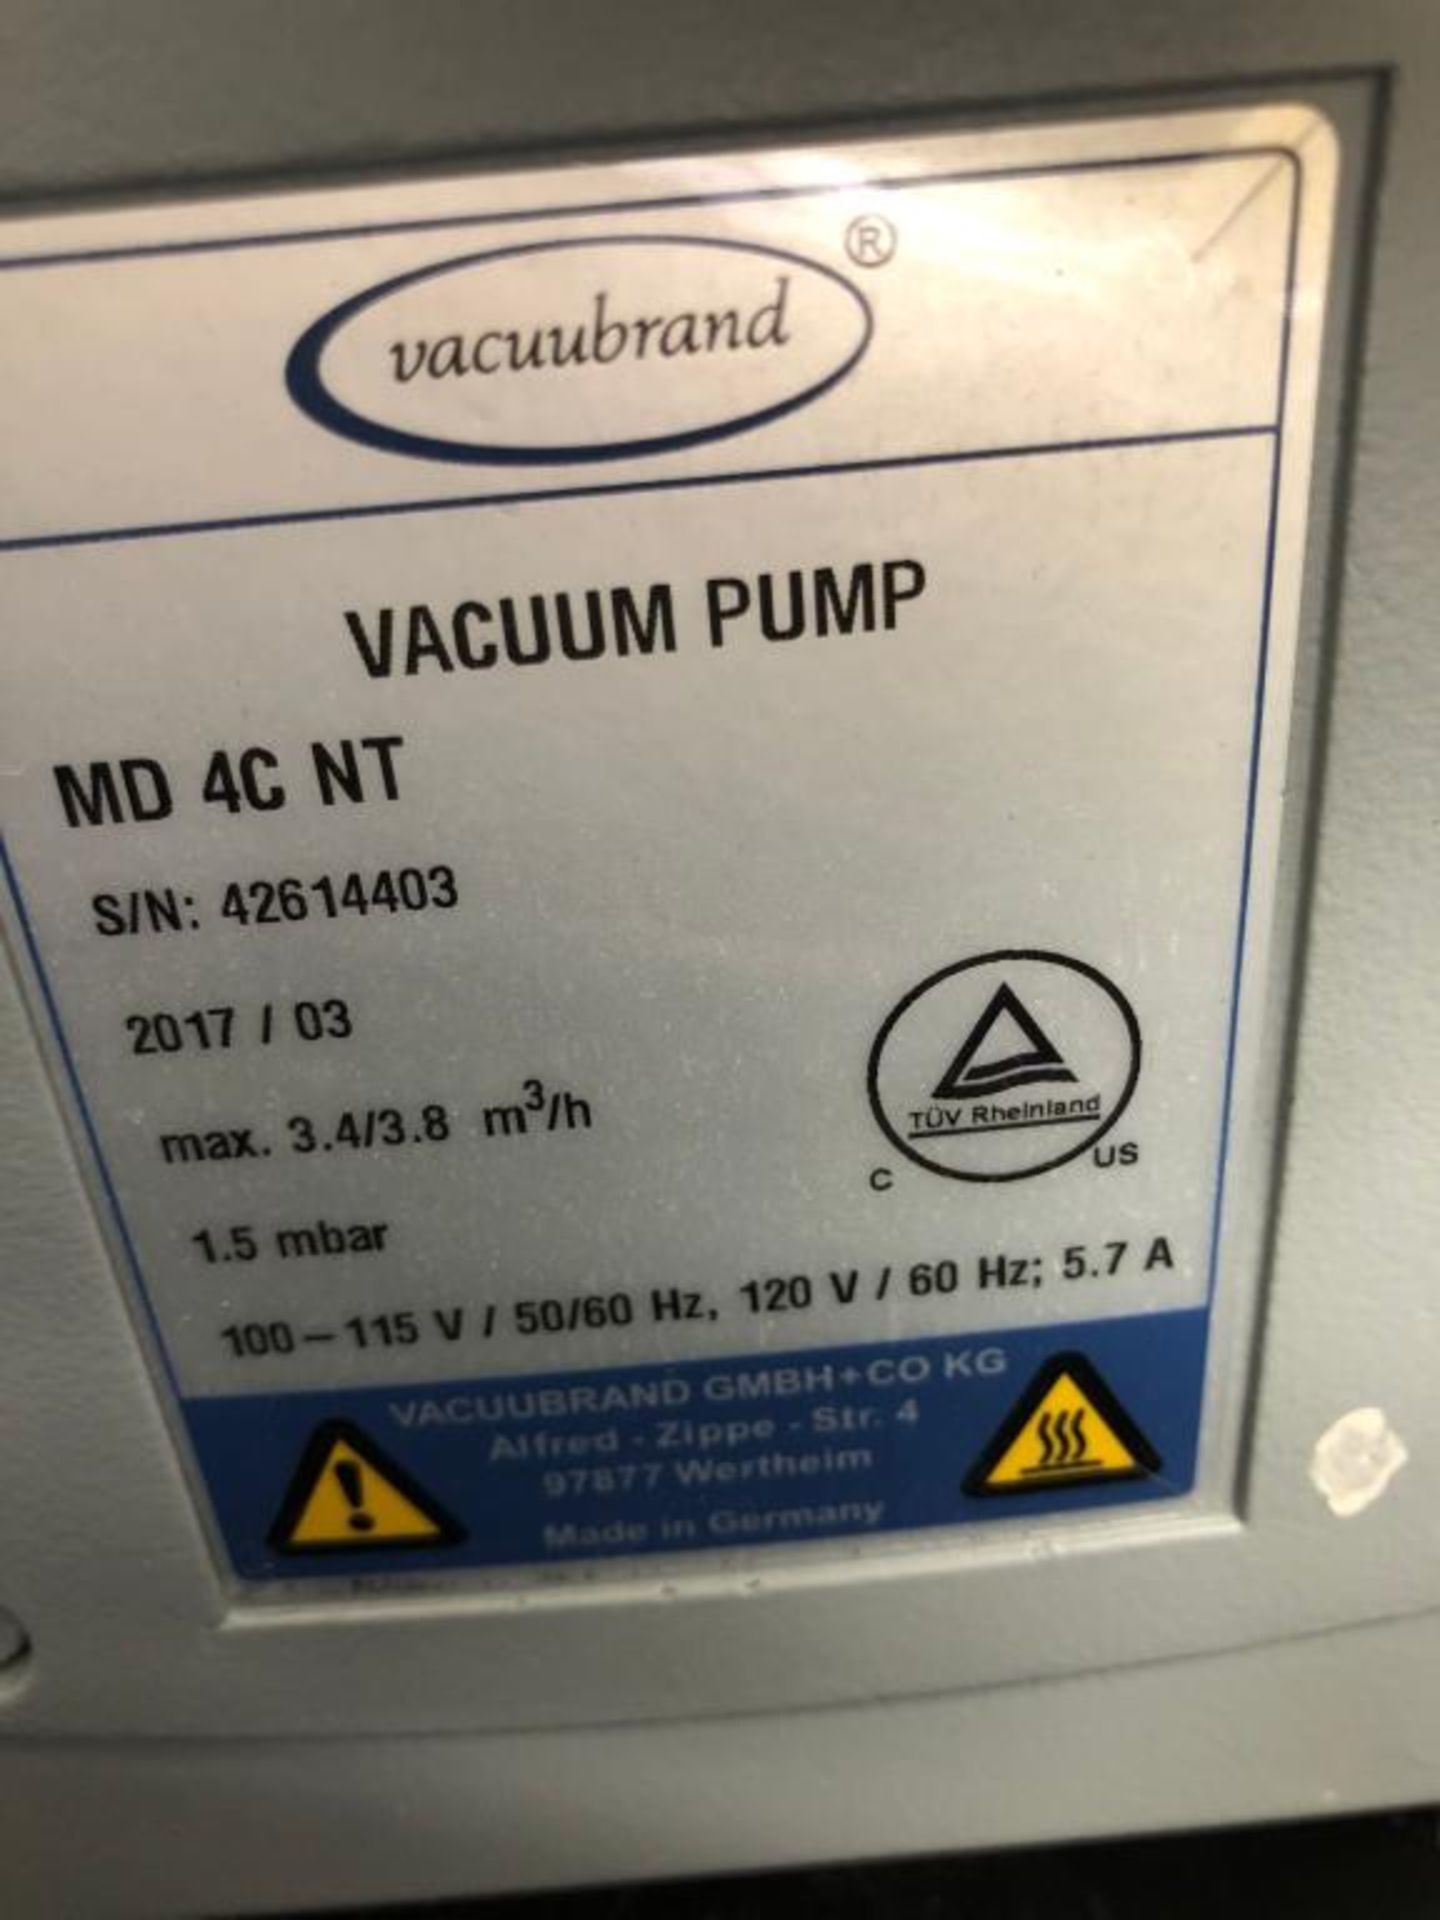 Vacuubrand Vacuum Pump - Image 4 of 4